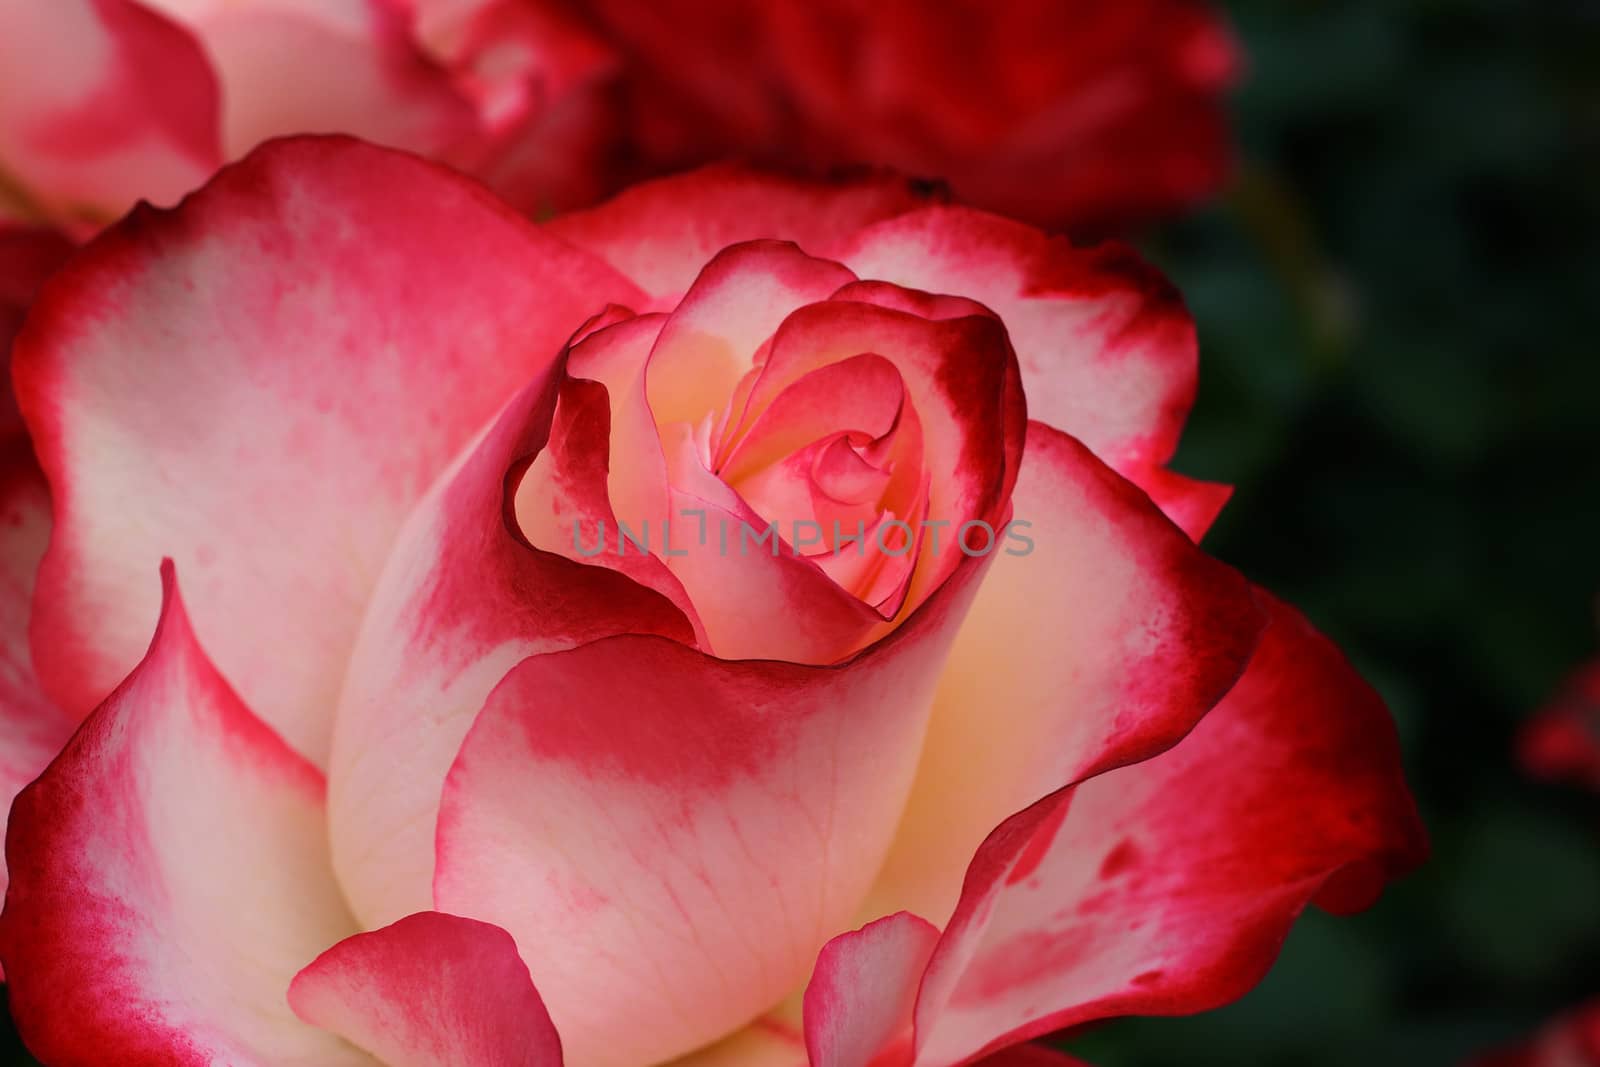 Crimson White Rose by bobkeenan